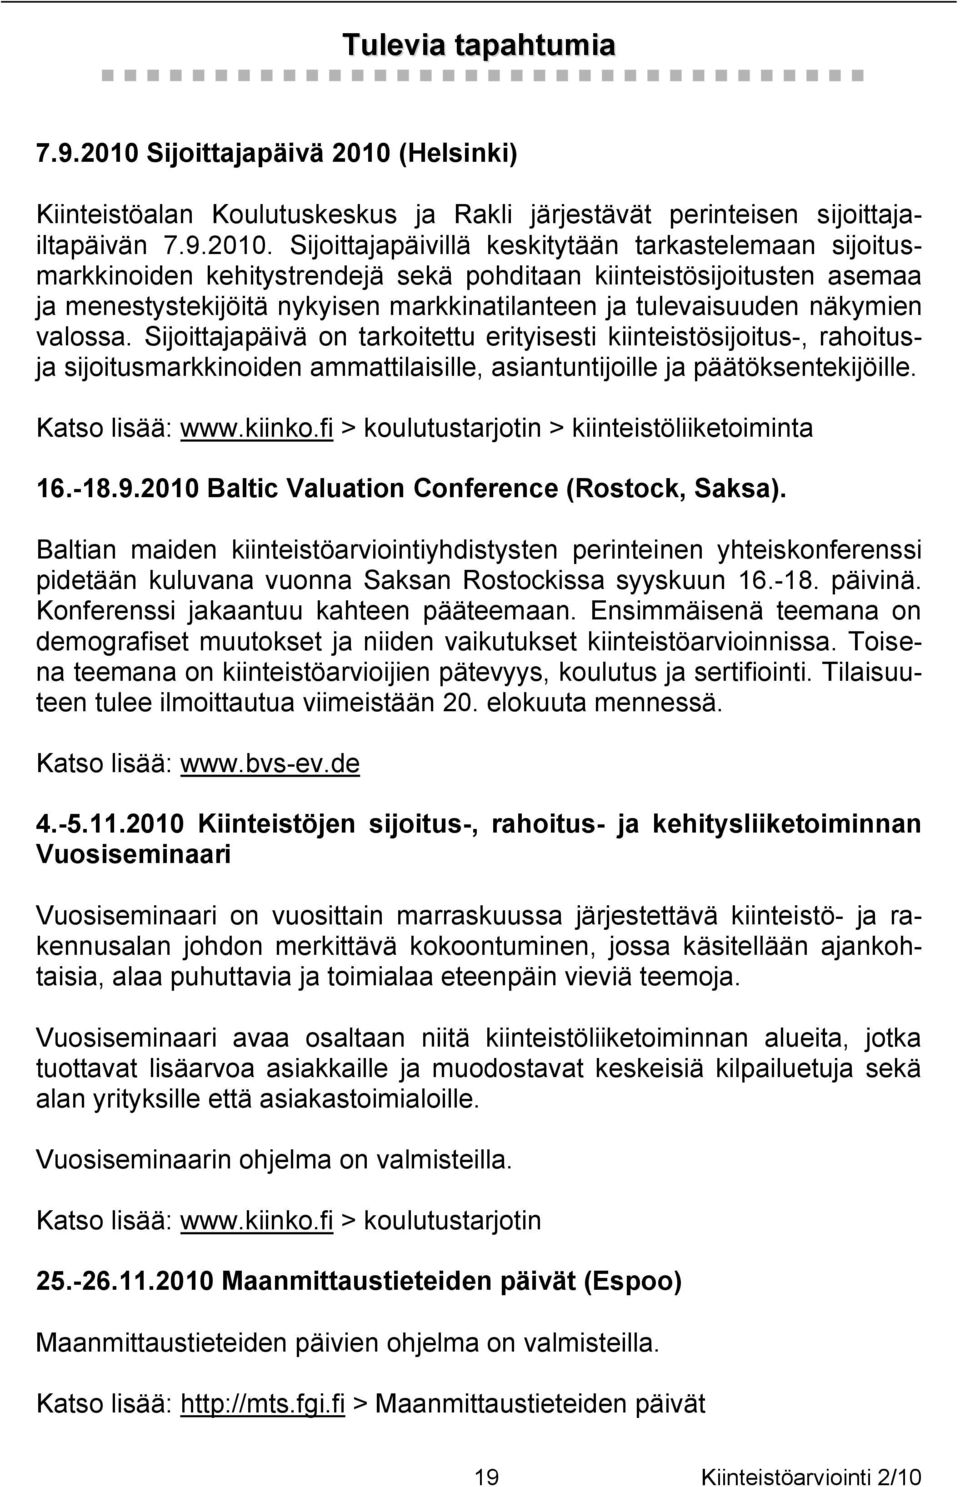 (Helsinki) Kiinteistöalan Koulutuskeskus ja Rakli järjestävät perinteisen sijoittajailtapäivän 7.9.2010.